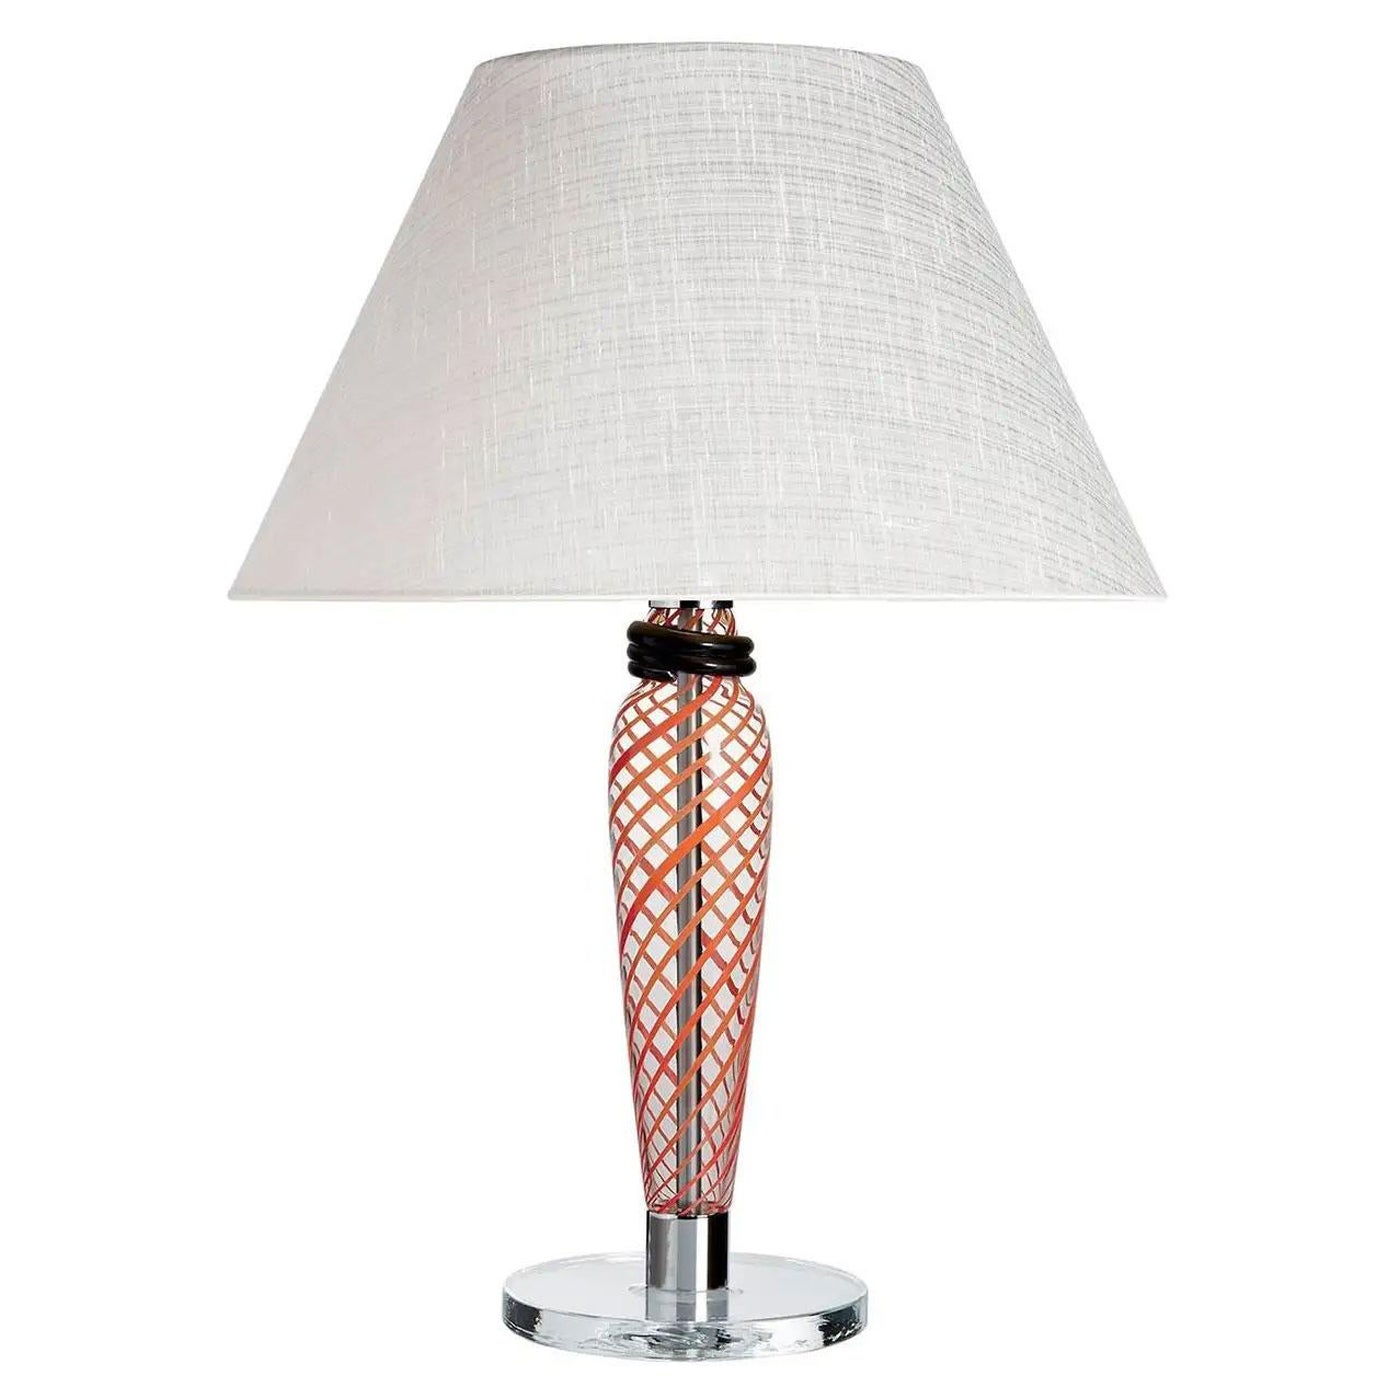 Bricola Carlo Moretti Contemporary Red and Coral Murano Glass Table Lamp